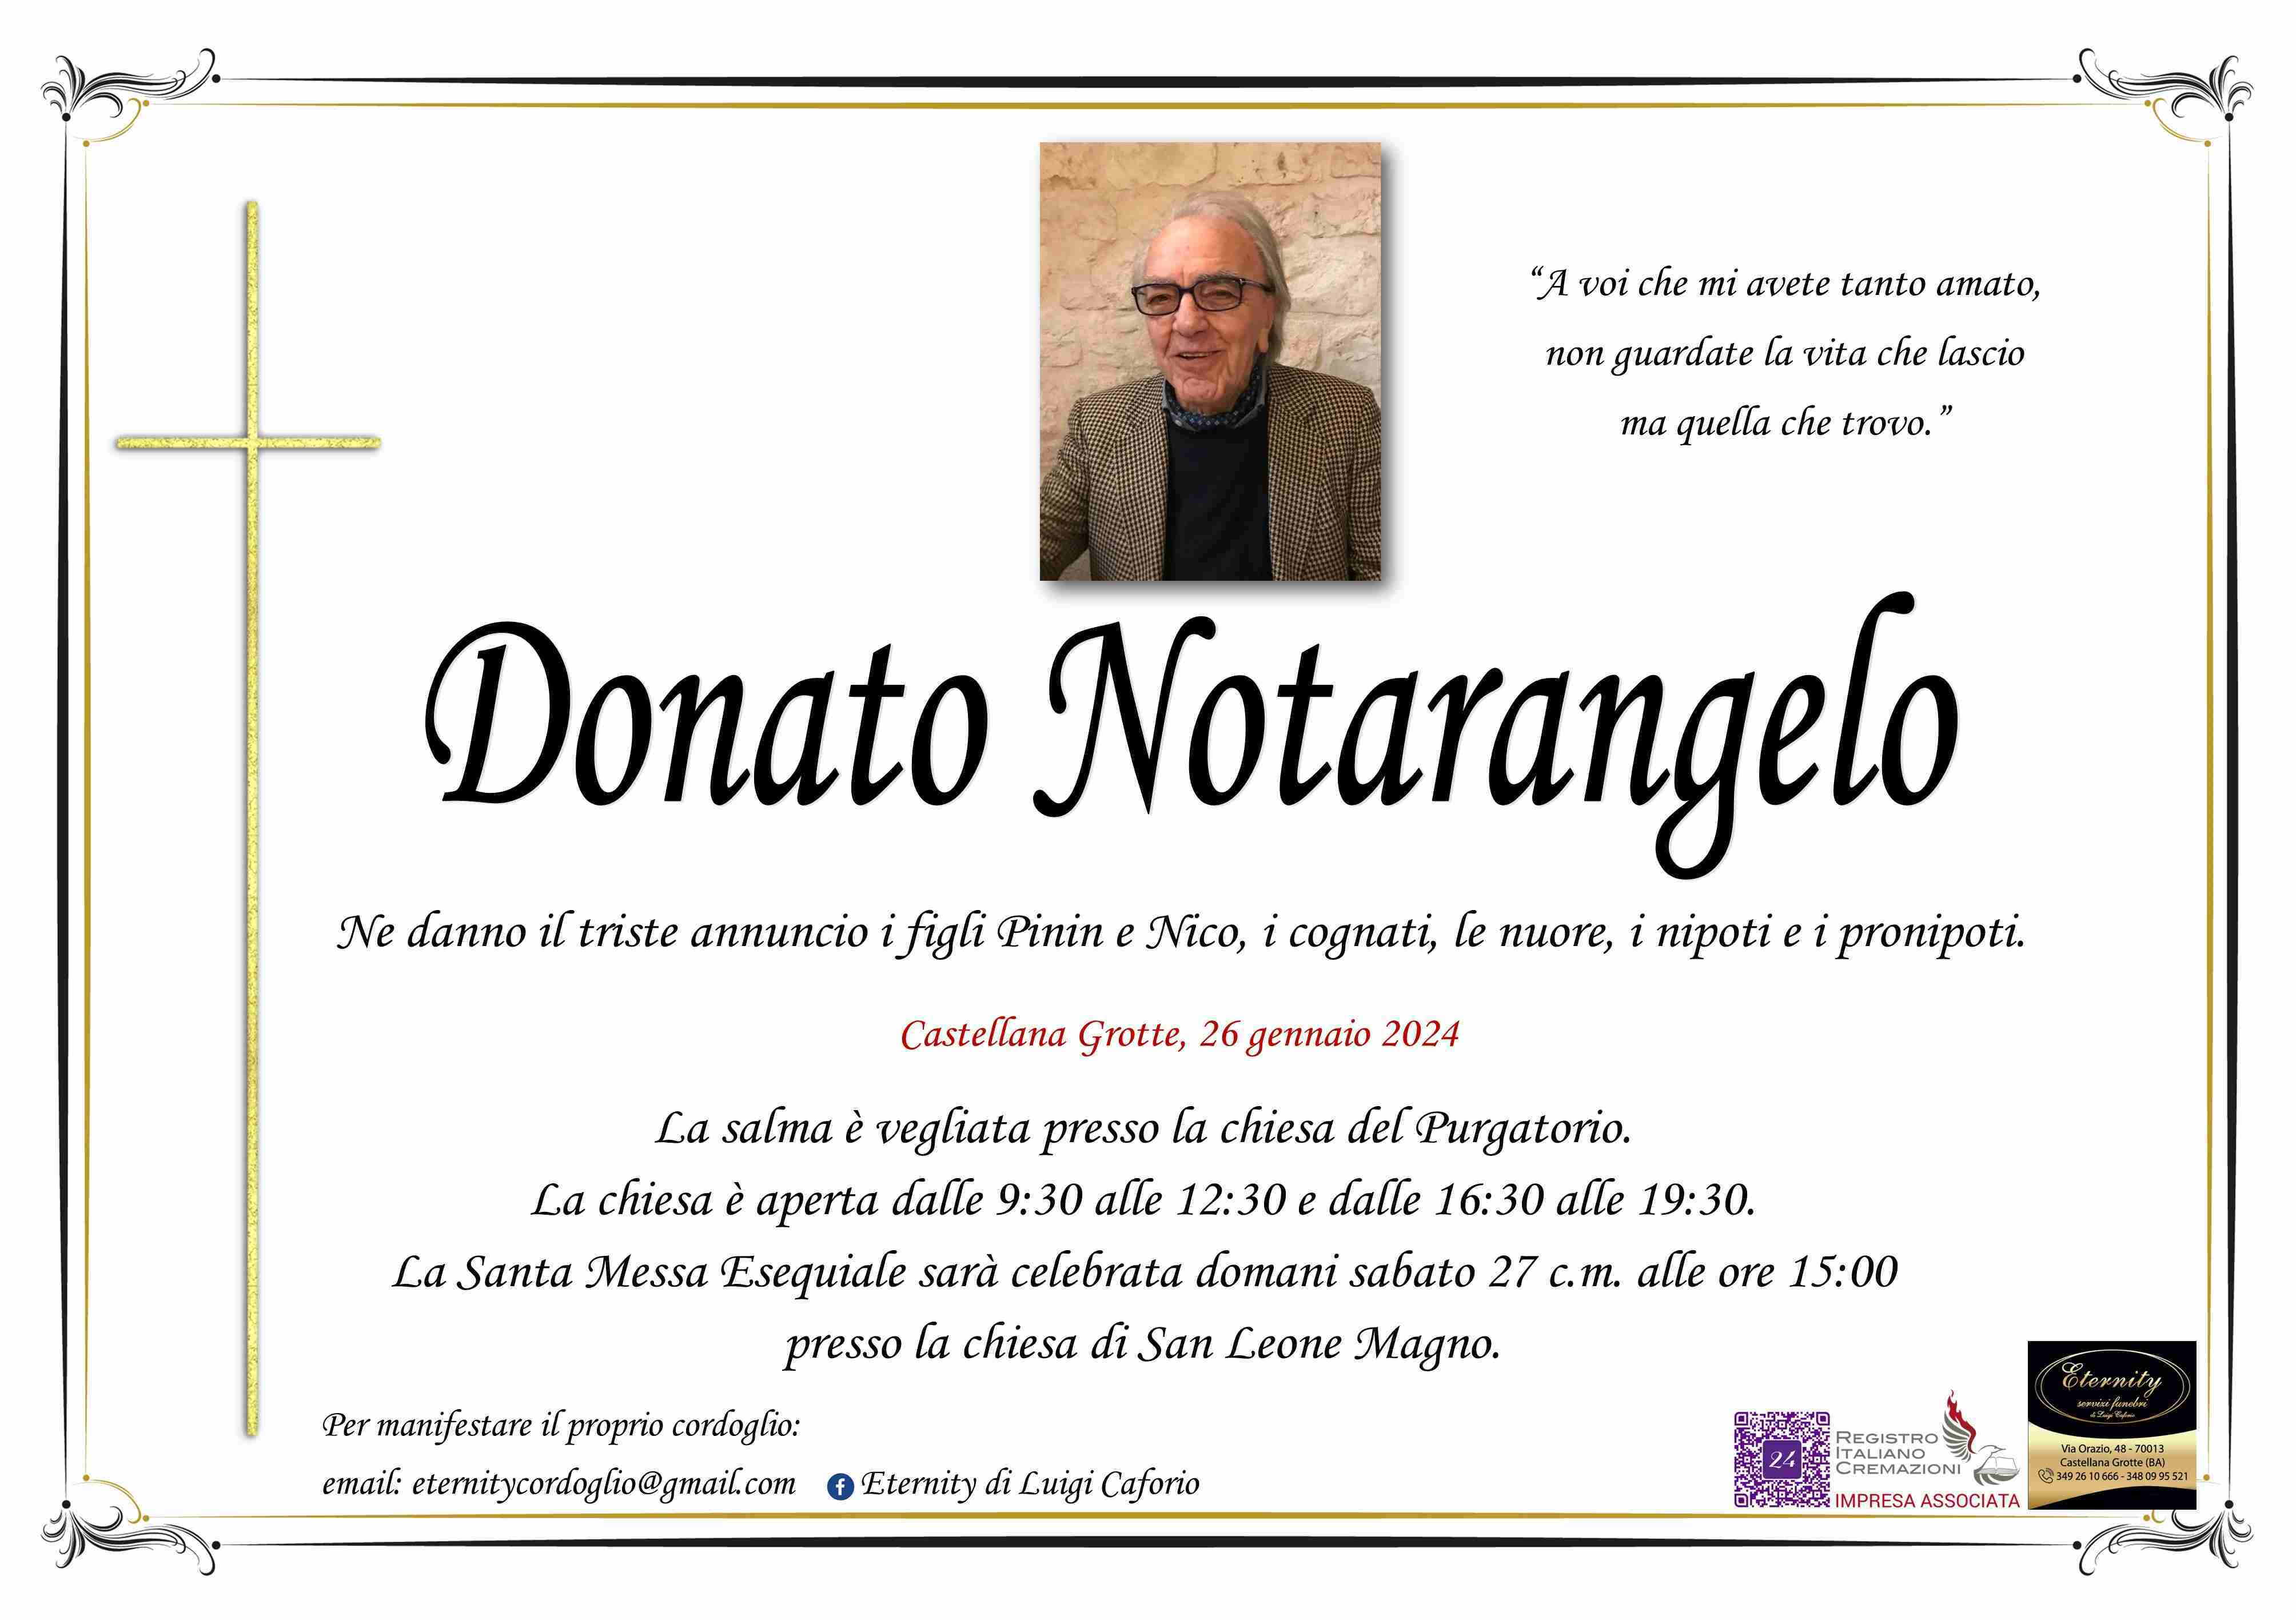 Donato Notarangelo